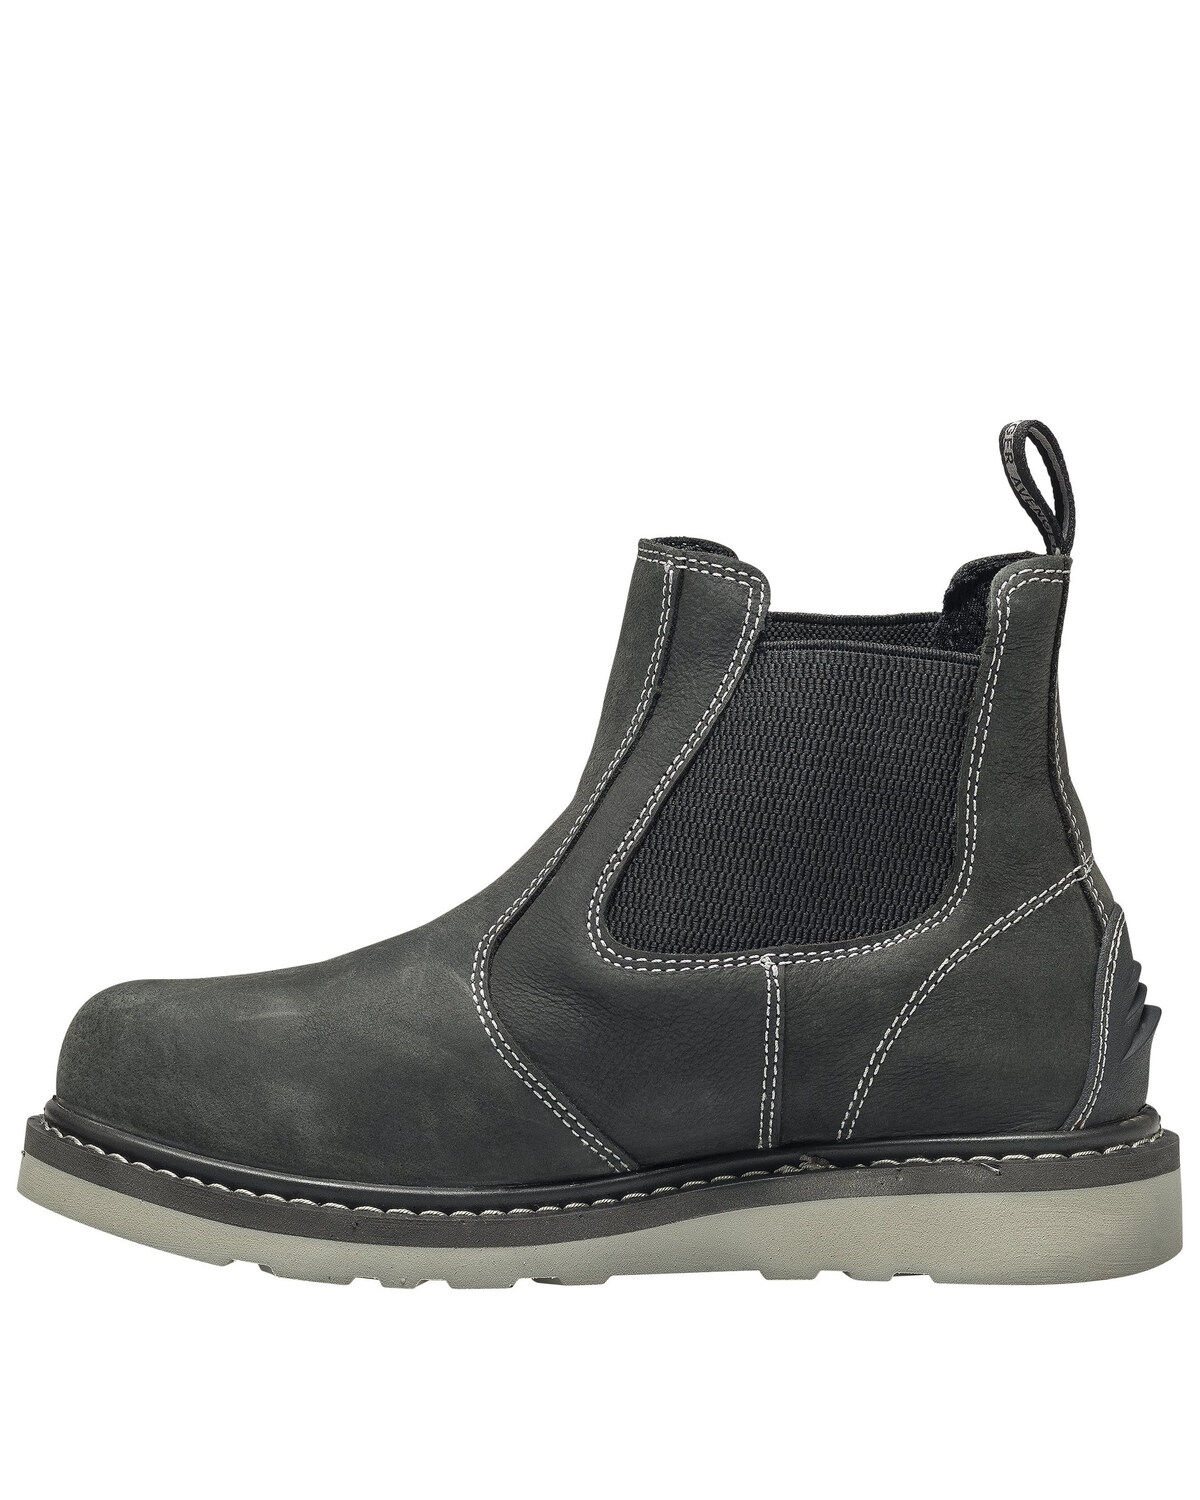 black wedge waterproof boots